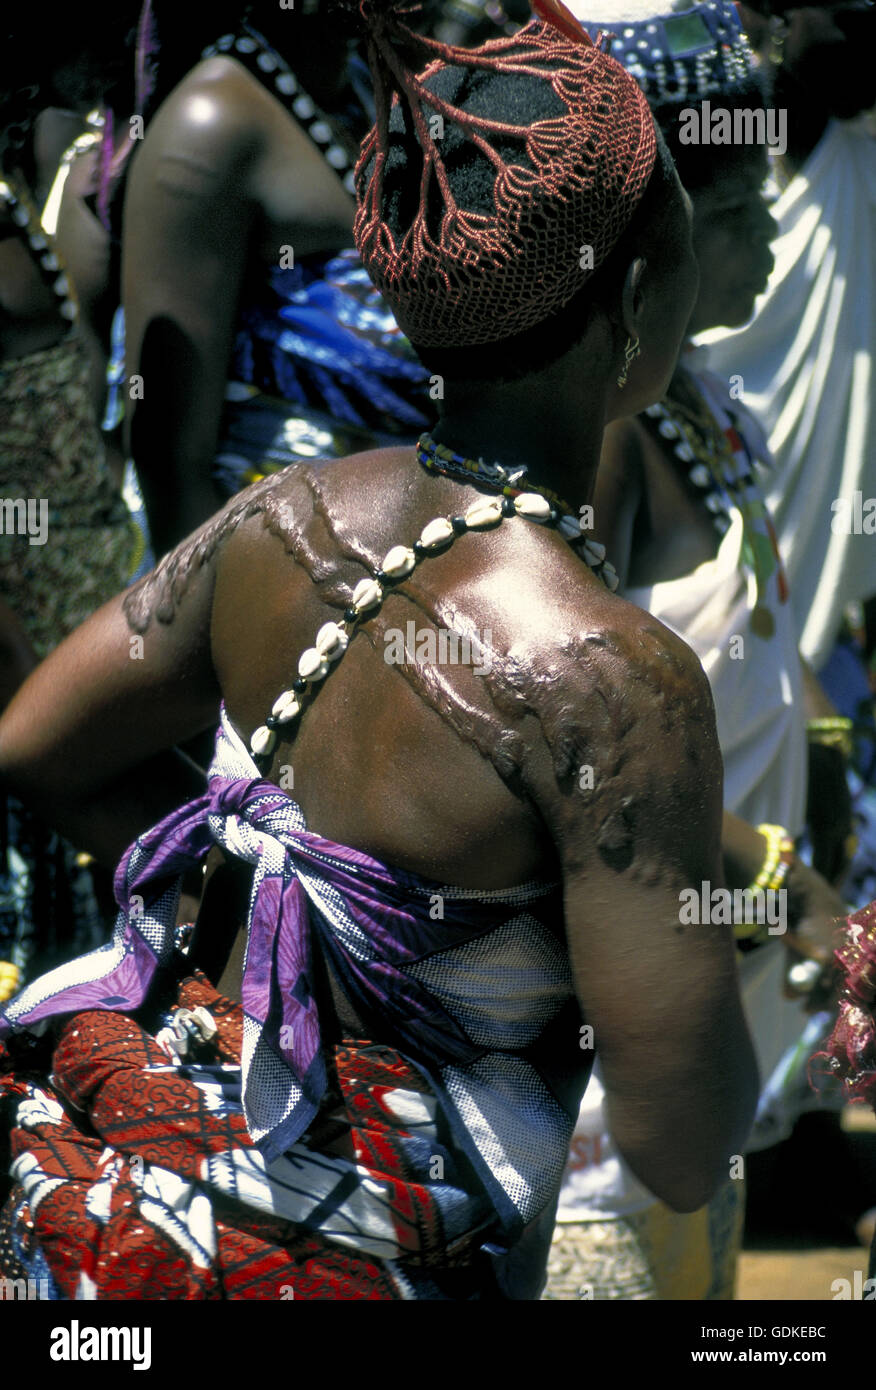 La scarification rituelle est considéré comme un insigne d'honneur chez les adeptes du vaudou. L'Afrique de l'Ouest. Banque D'Images